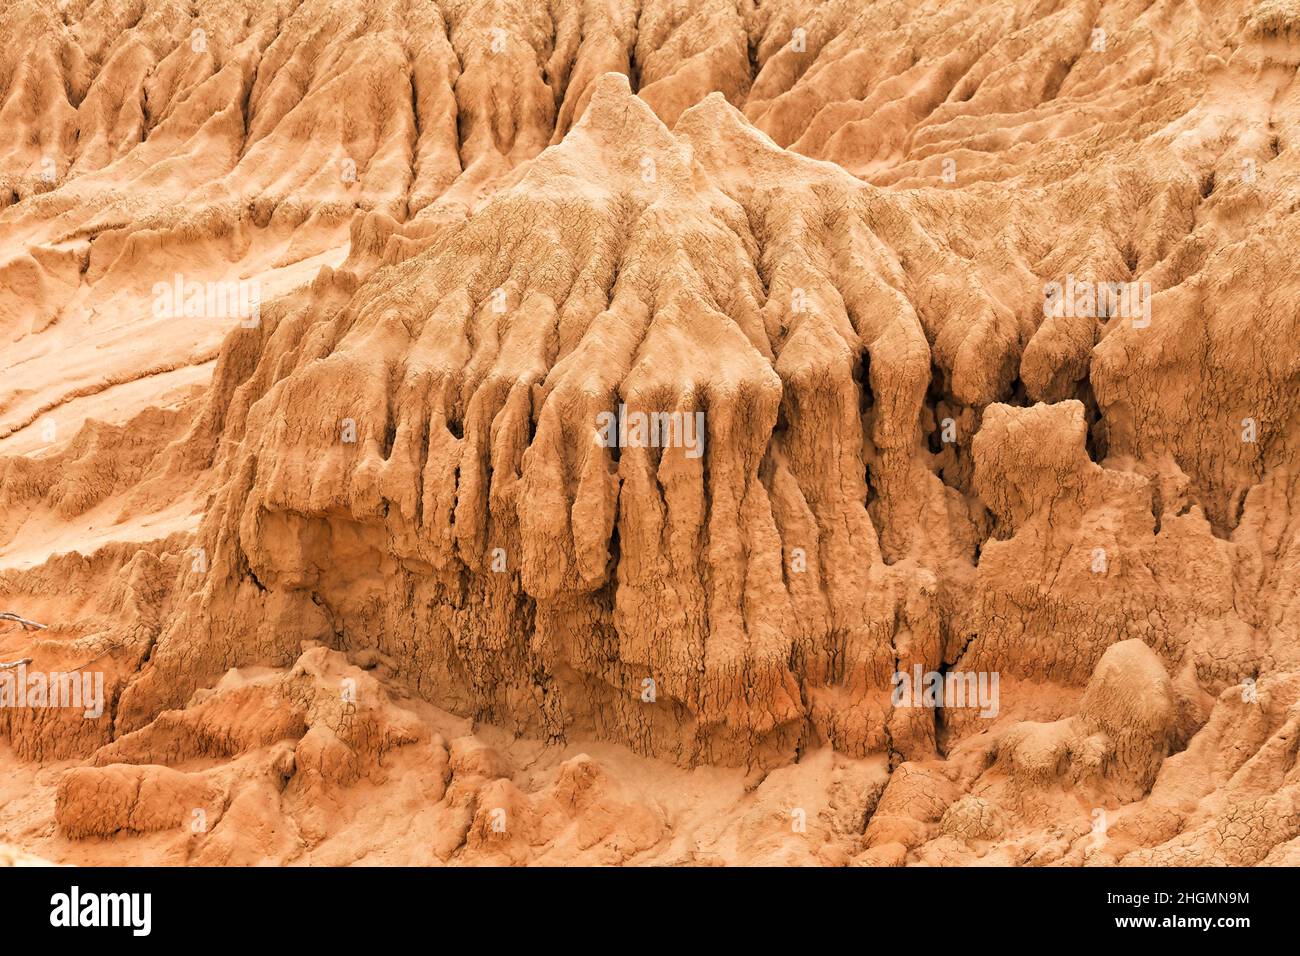 Erodierte Sandstoen-Lunette-Formation aus Lehm in den Mauern chinas, ein Naturwunder im Lake Mungo National Park von Australien. Stockfoto